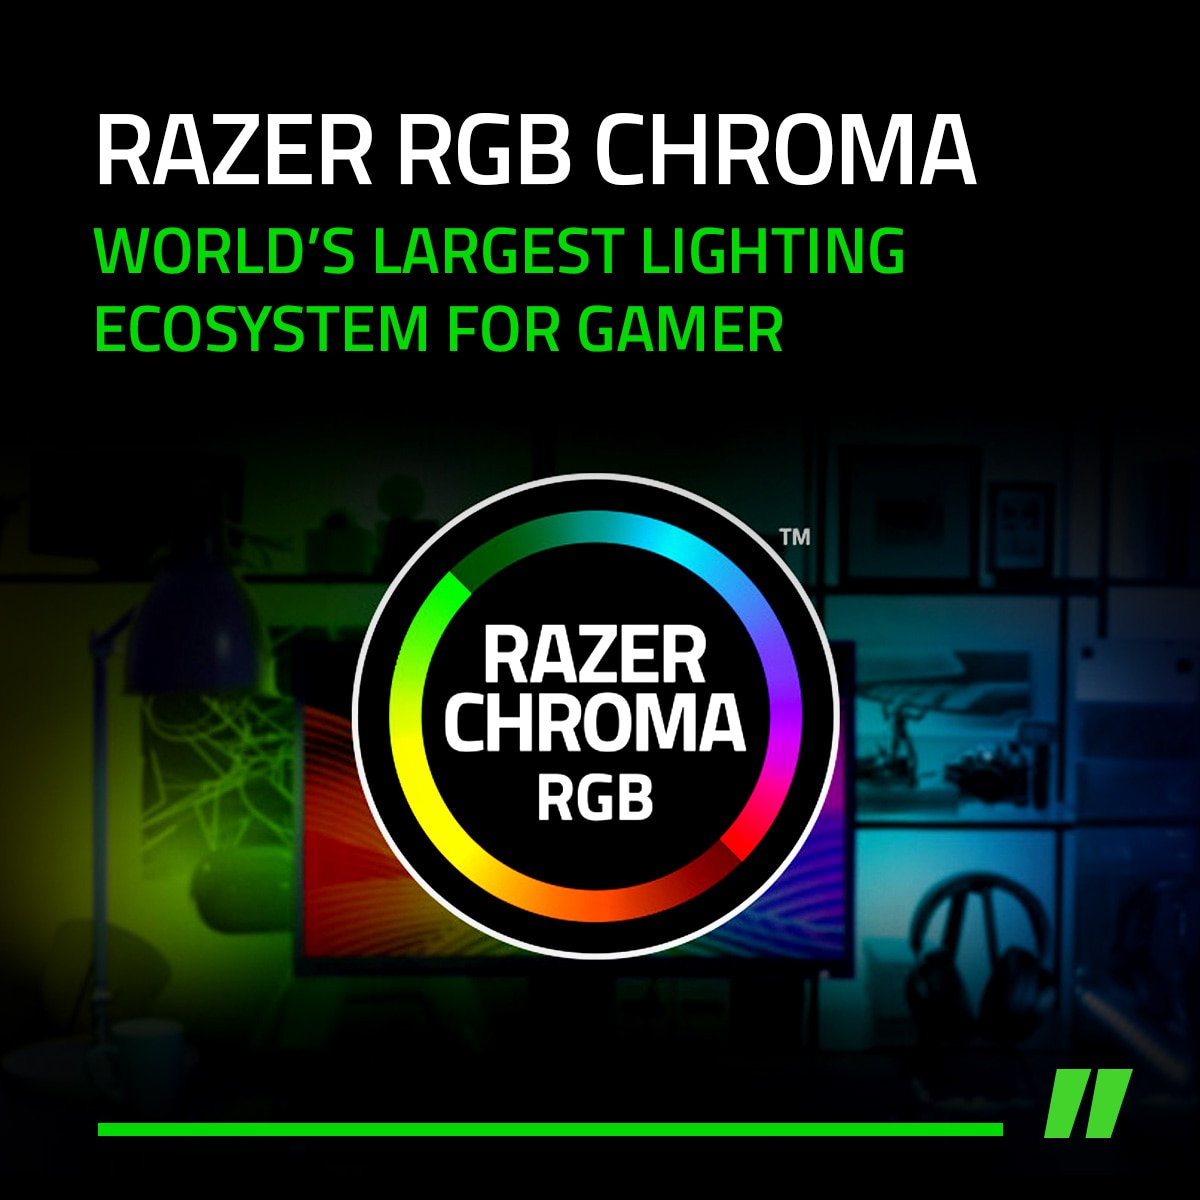 Razer 雷蛇Chroma RGB，擁有1680萬種燈光變化，可透過軟體將Razer周邊燈效串連，還可與指定遊戲串連，讓玩家體驗更全面的遊戲變化。